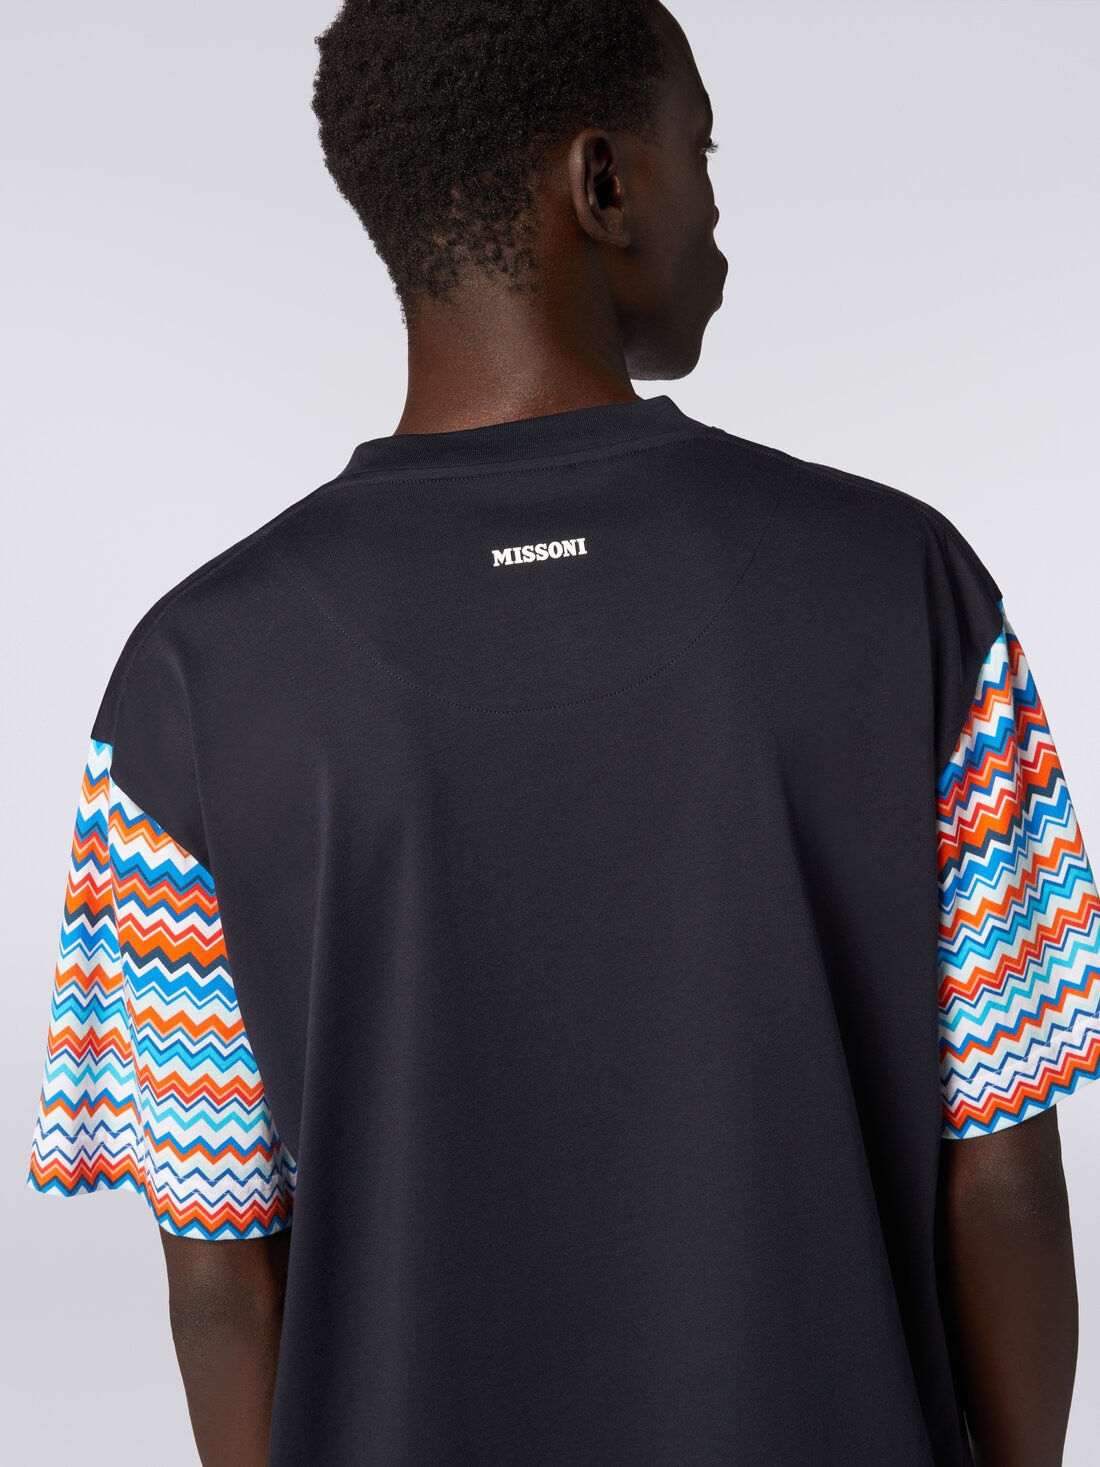 Camiseta extragrande de algodón con inserciones zigzag, Multicolor  - US24SL0BBJ00J1S72E1 - 4